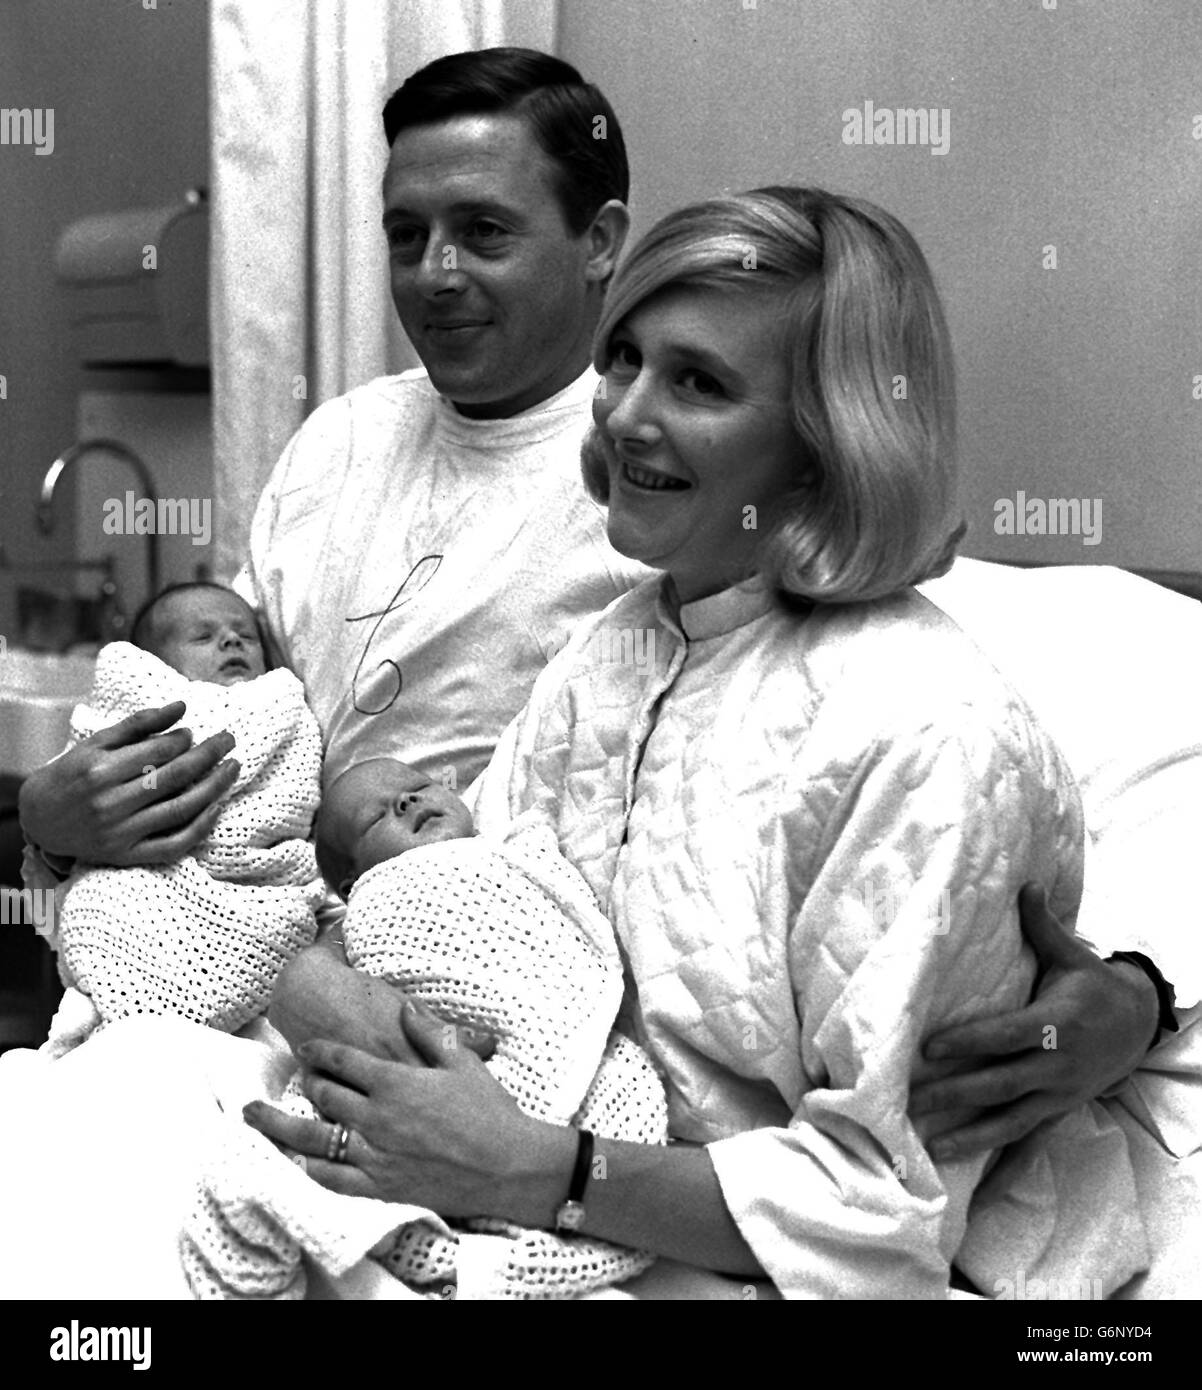 Michael Aspel, le lecteur de nouvelles de la BBC Television, porte un manteau médical blanc pour rendre visite à sa femme Ann et à leurs deux enfants, les jumeaux Jane (à droite) et Edward, à l'hôpital de la ville de Londres. Les bébés sont nés le 11 octobre. Banque D'Images